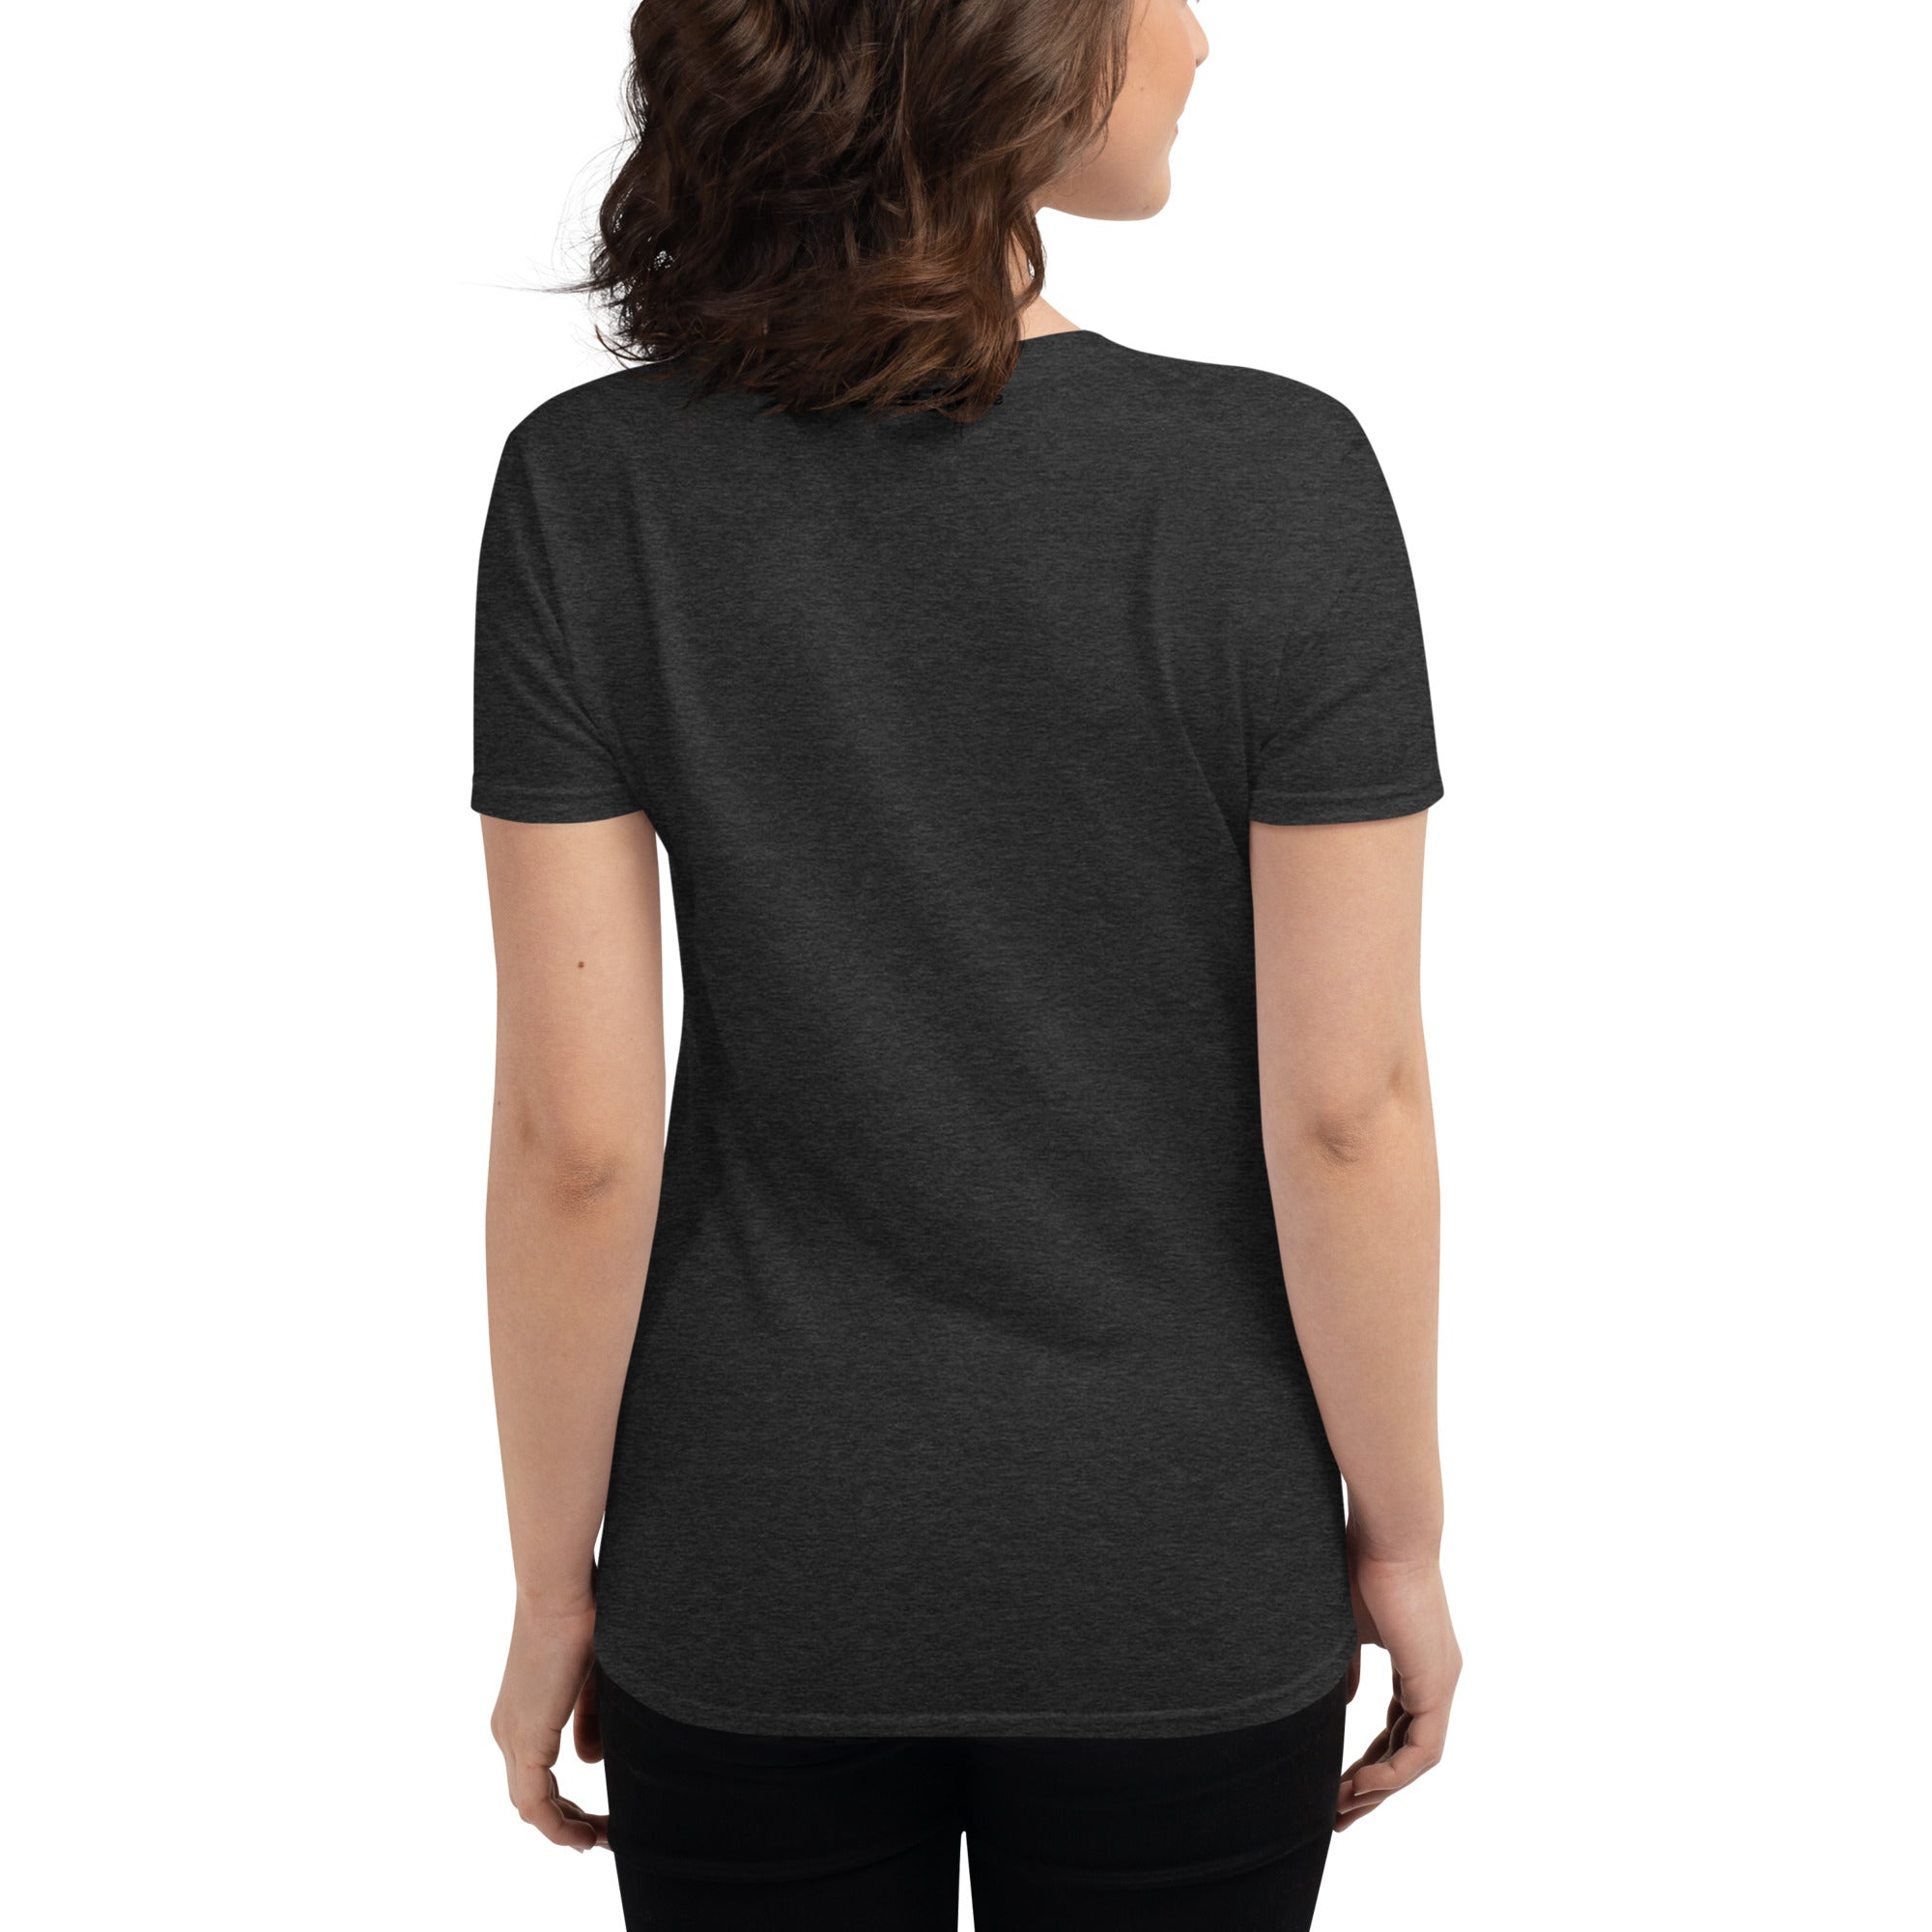 Boston Terrier  Women's short sleeve t-shirt